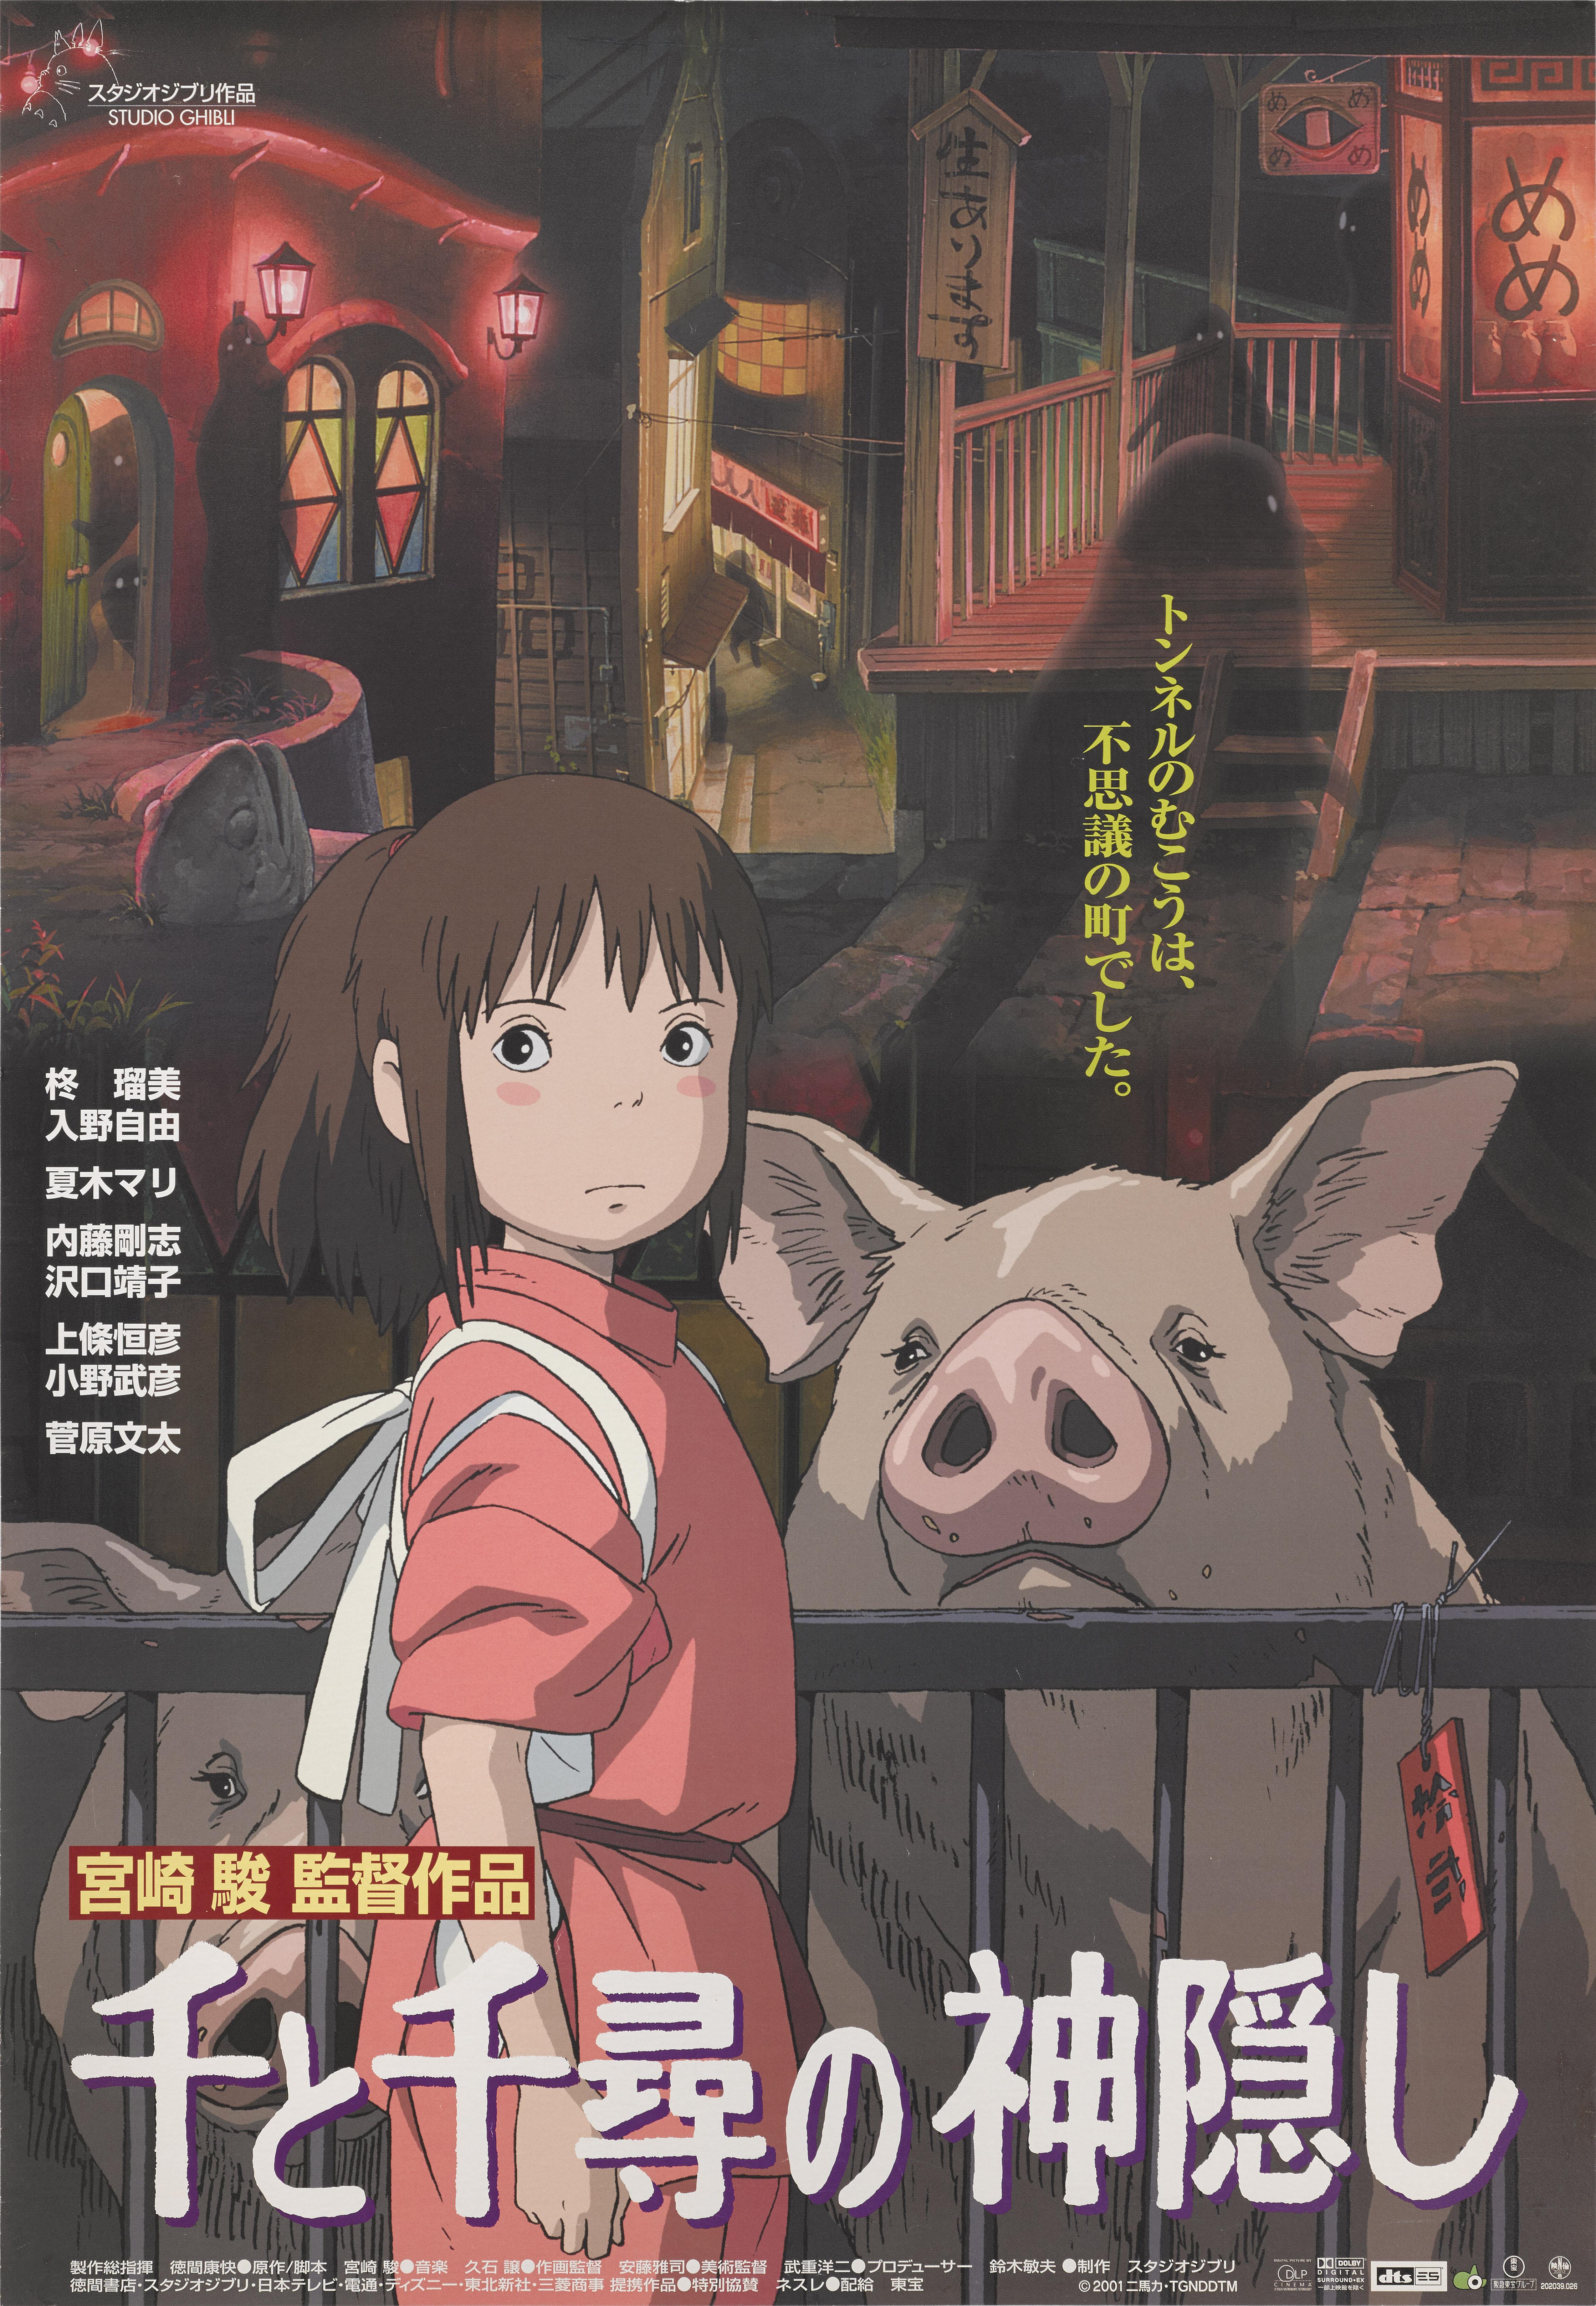 Originales japanisches Filmplakat für den Studio Ghibli-Animationsfilm von 2001.
Dieses Meisterwerk der Animation wurde von Hayao Miyazaki inszeniert und gewann 2002 den Academy Award für den besten animierten Spielfilm.
Dieses Plakat ist ungefaltet